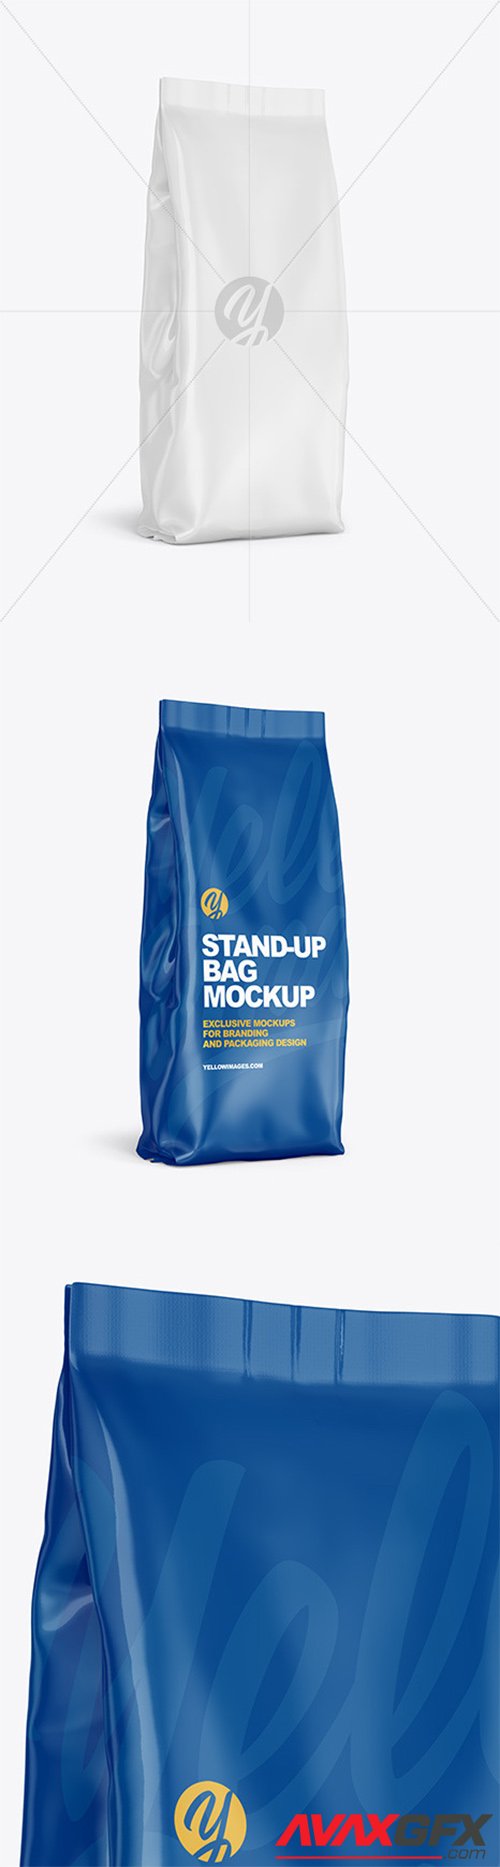 Glossy Stand-up Bag Mockup 61557